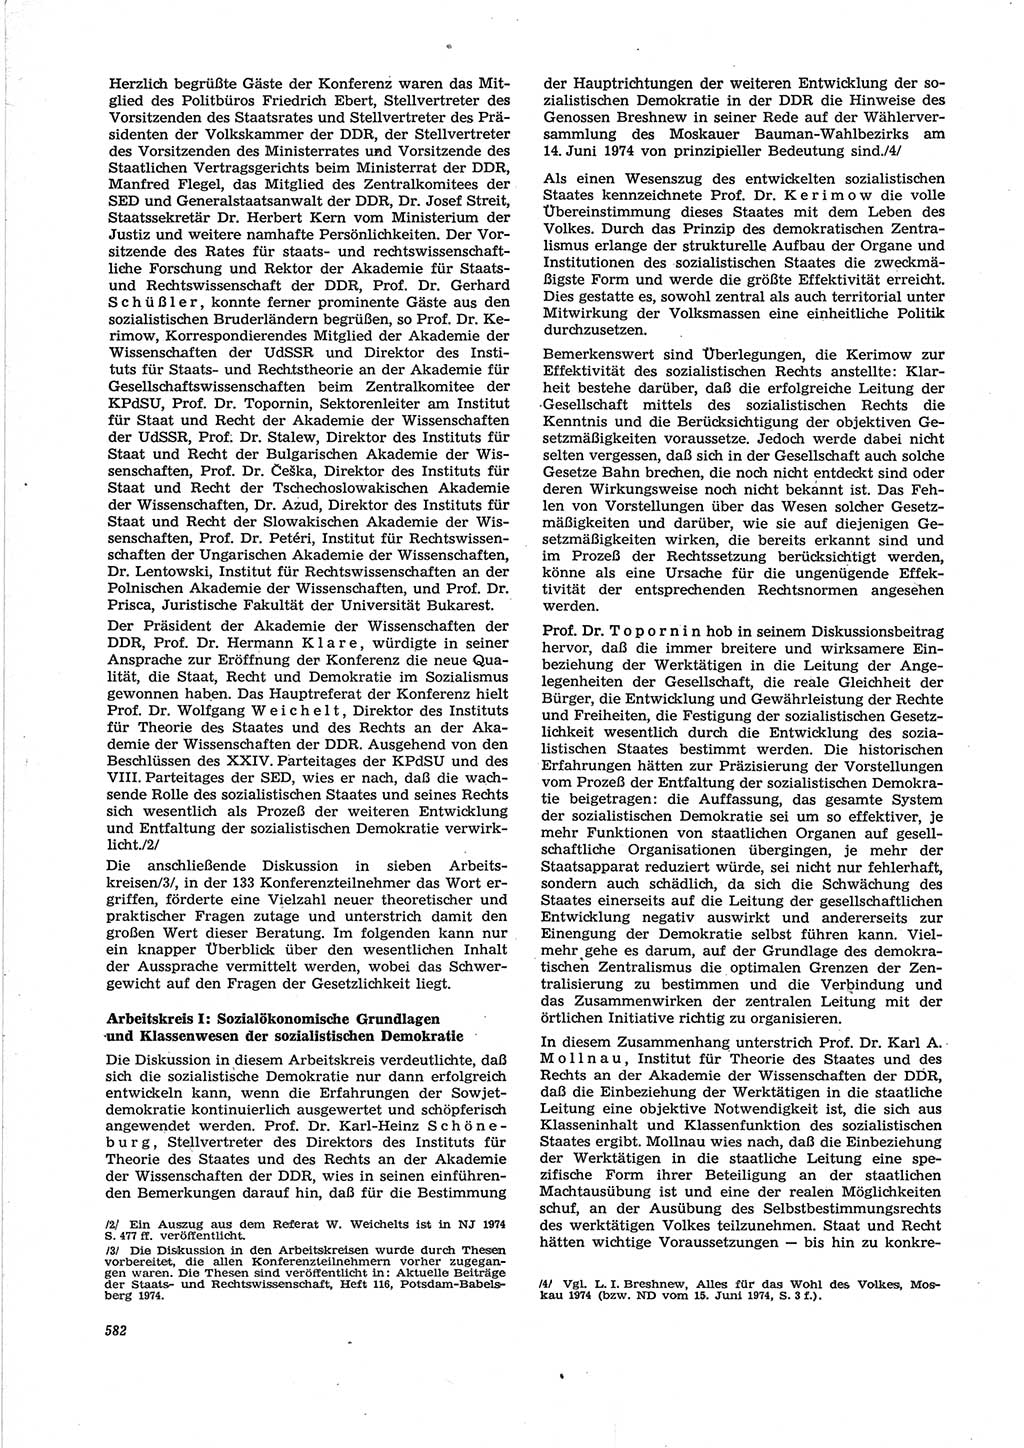 Neue Justiz (NJ), Zeitschrift für Recht und Rechtswissenschaft [Deutsche Demokratische Republik (DDR)], 28. Jahrgang 1974, Seite 582 (NJ DDR 1974, S. 582)